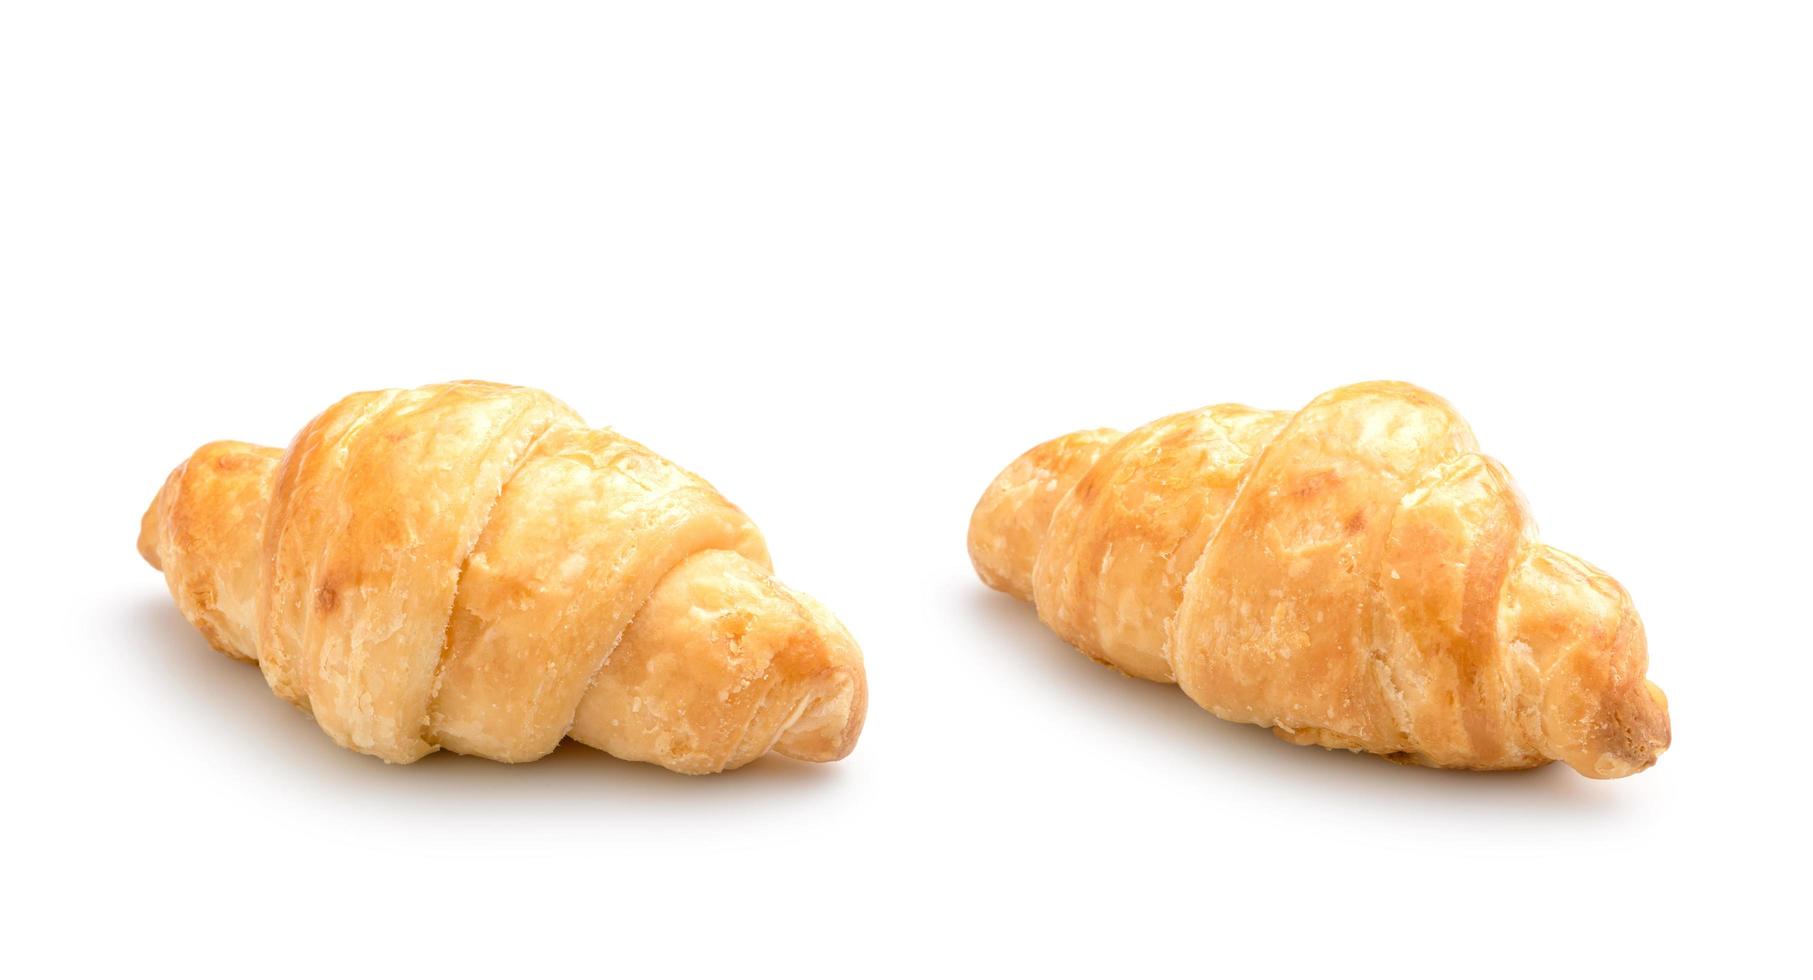 croissant recién hecho. foto de estudio aislado sobre fondo blanco. concepto de comida chatarra, obesidad o alimentos saludables